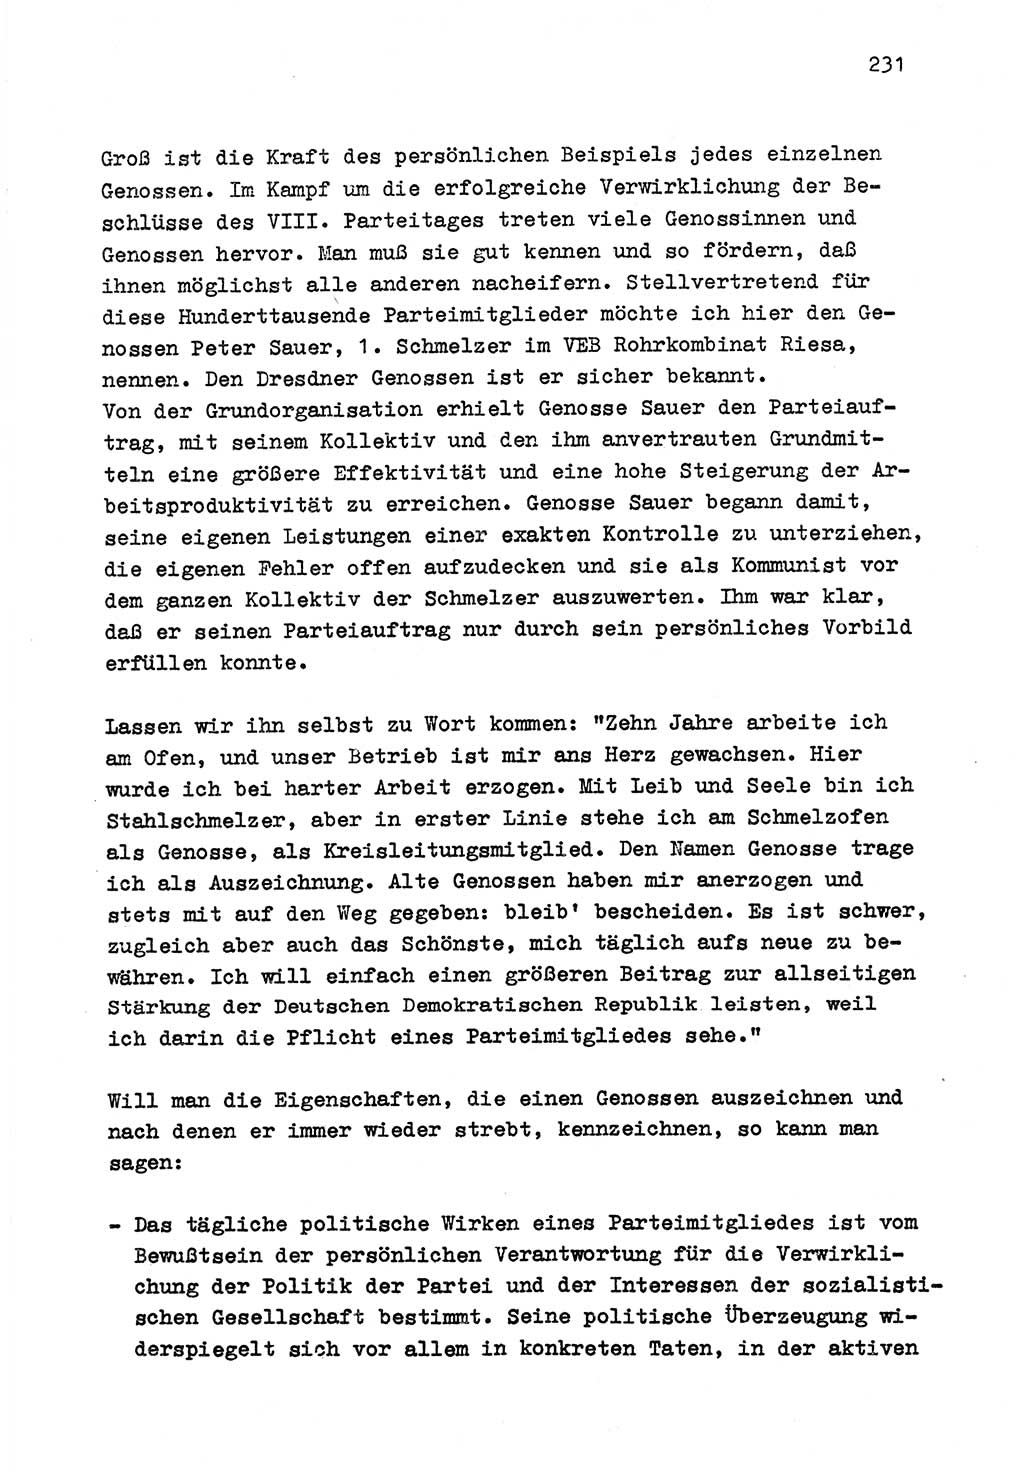 Zu Fragen der Parteiarbeit [Sozialistische Einheitspartei Deutschlands (SED) Deutsche Demokratische Republik (DDR)] 1979, Seite 231 (Fr. PA SED DDR 1979, S. 231)